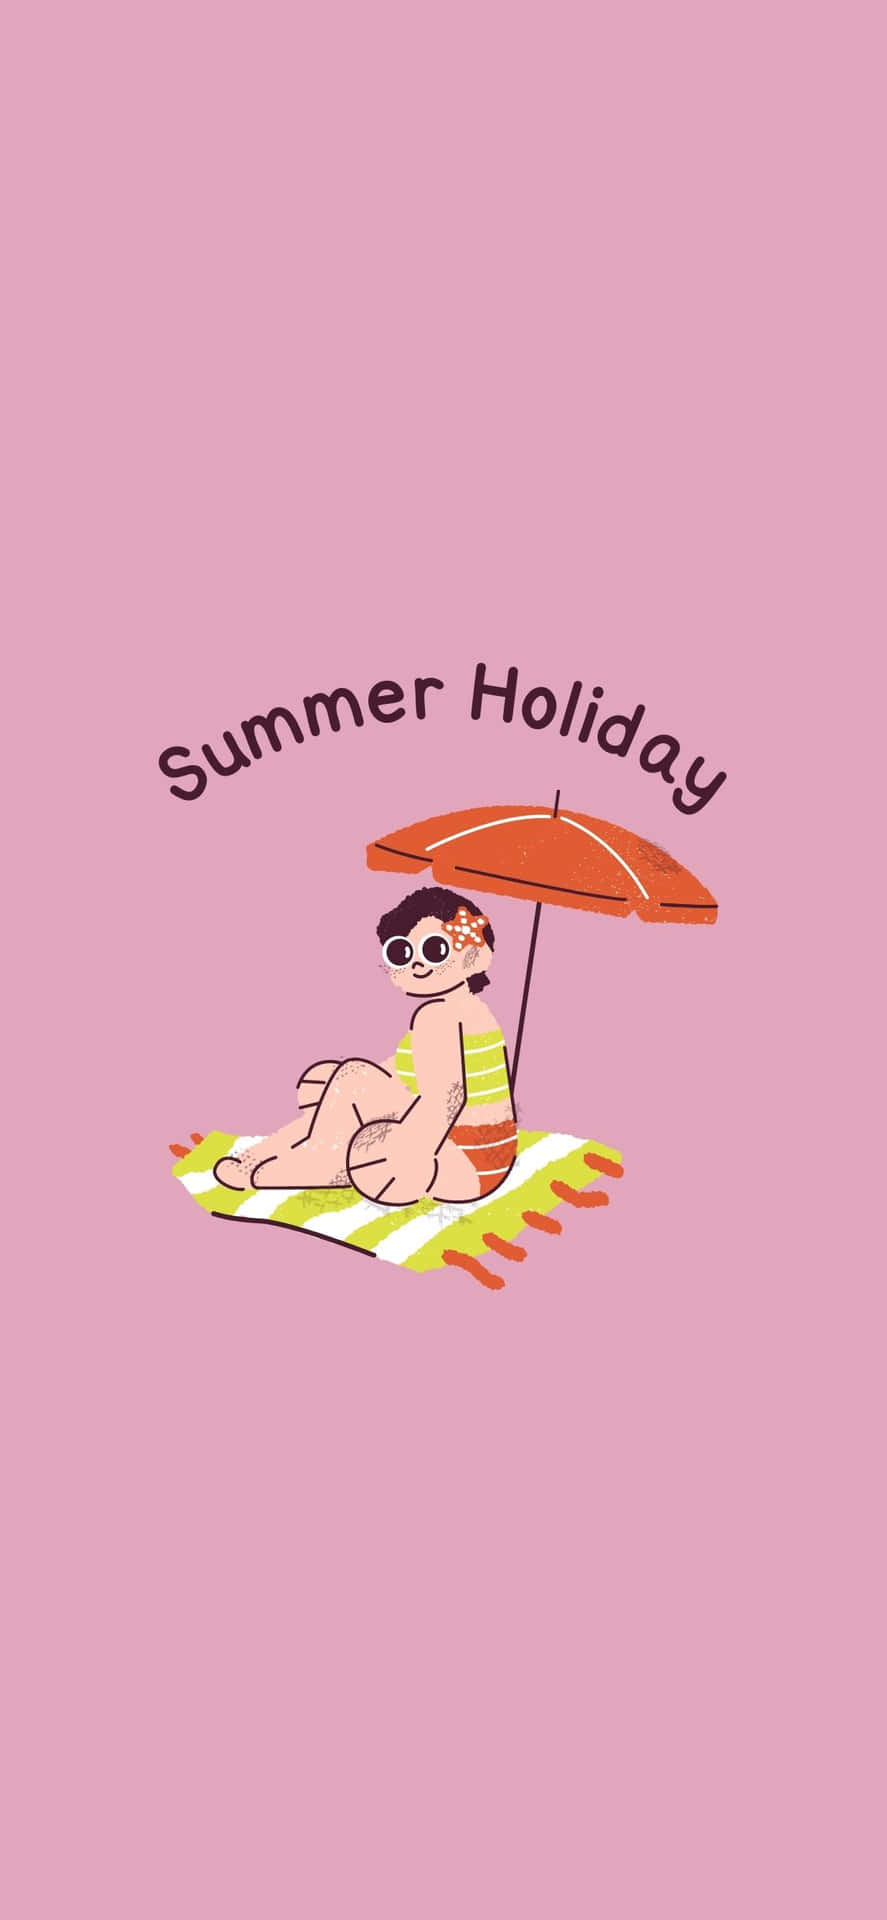 Sunbathing Girl Illustration iPhone X Summer Background